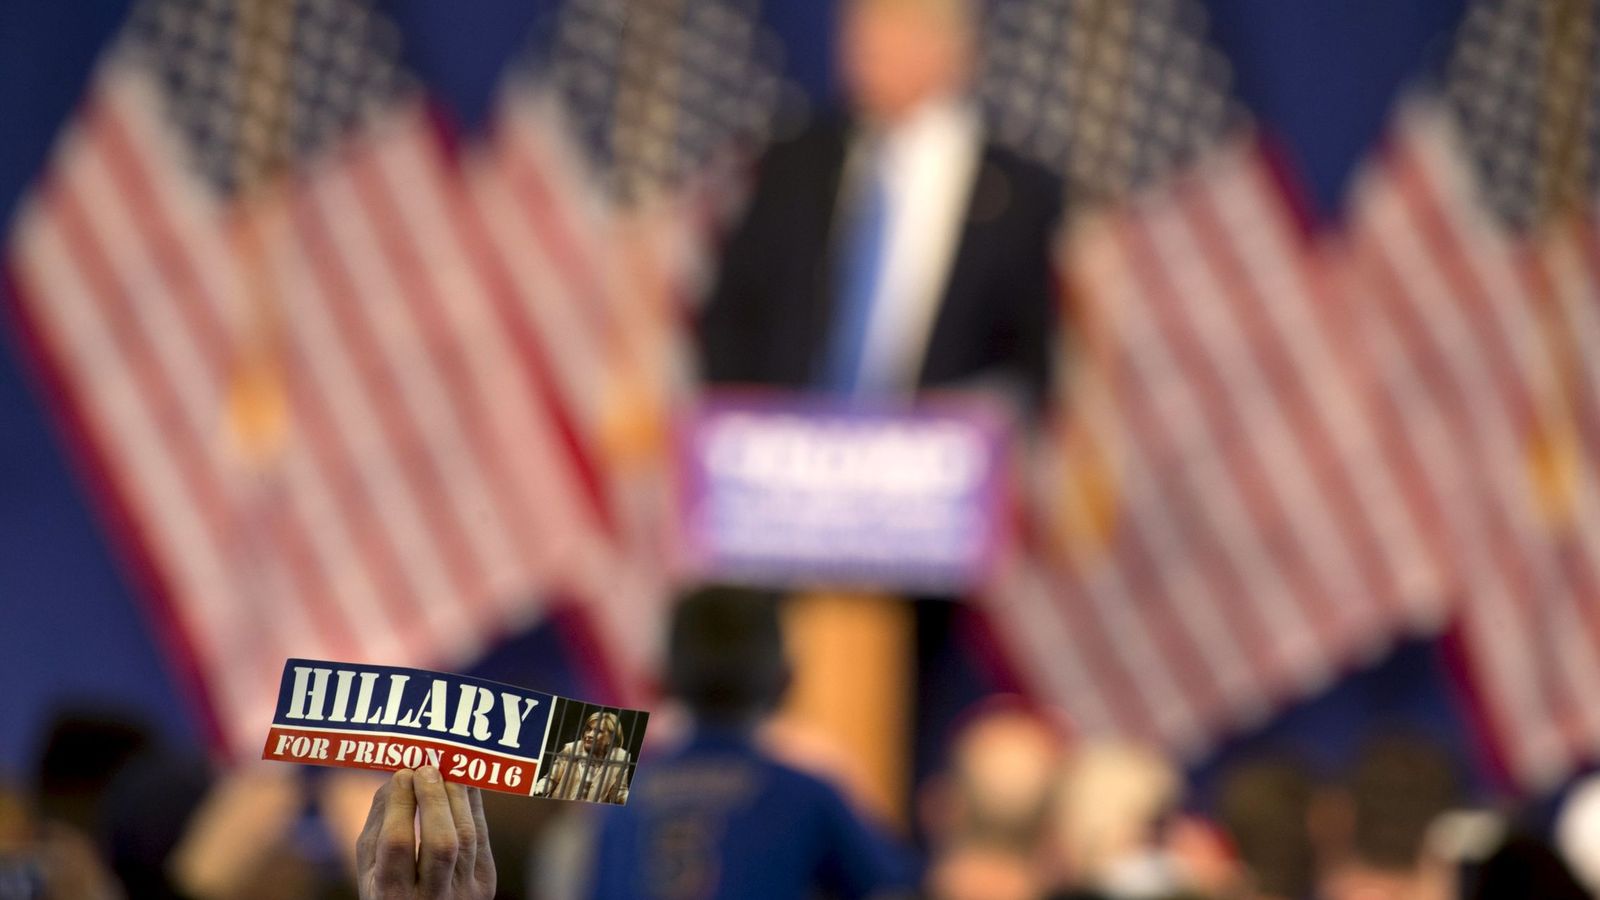 Foto: Un partidario de Donald Trump exhibe una pegatina donde se lee: "Hillary a la cárcel en 2016", durante la Convención Republicana de Cleveland (Reuters)